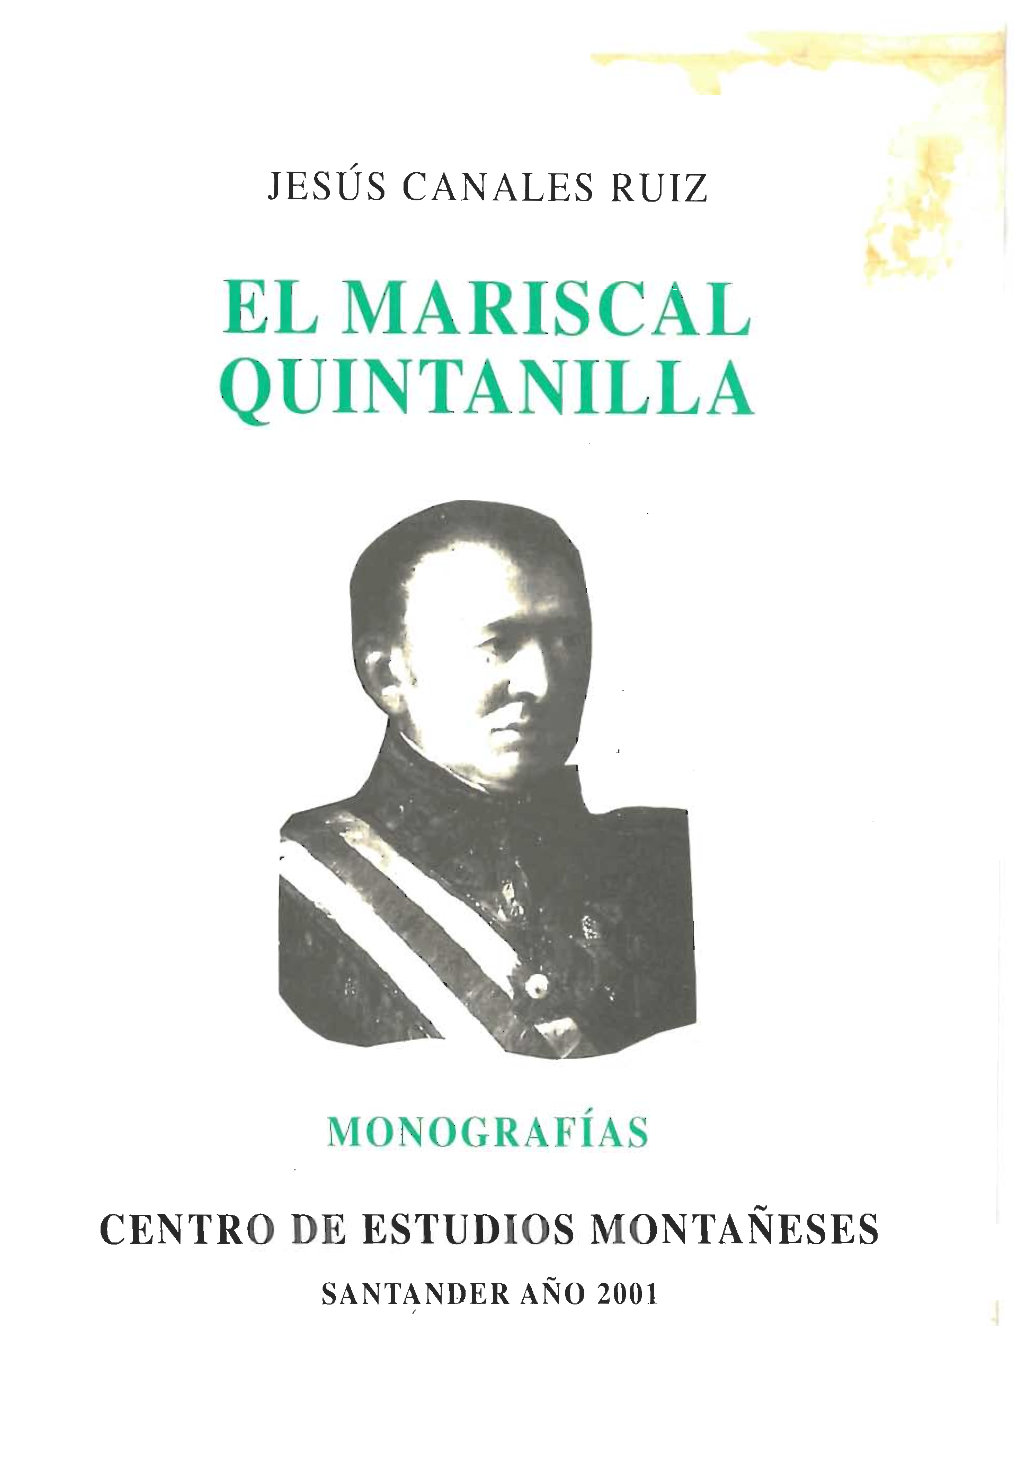 106. El Mariscal Quintanilla